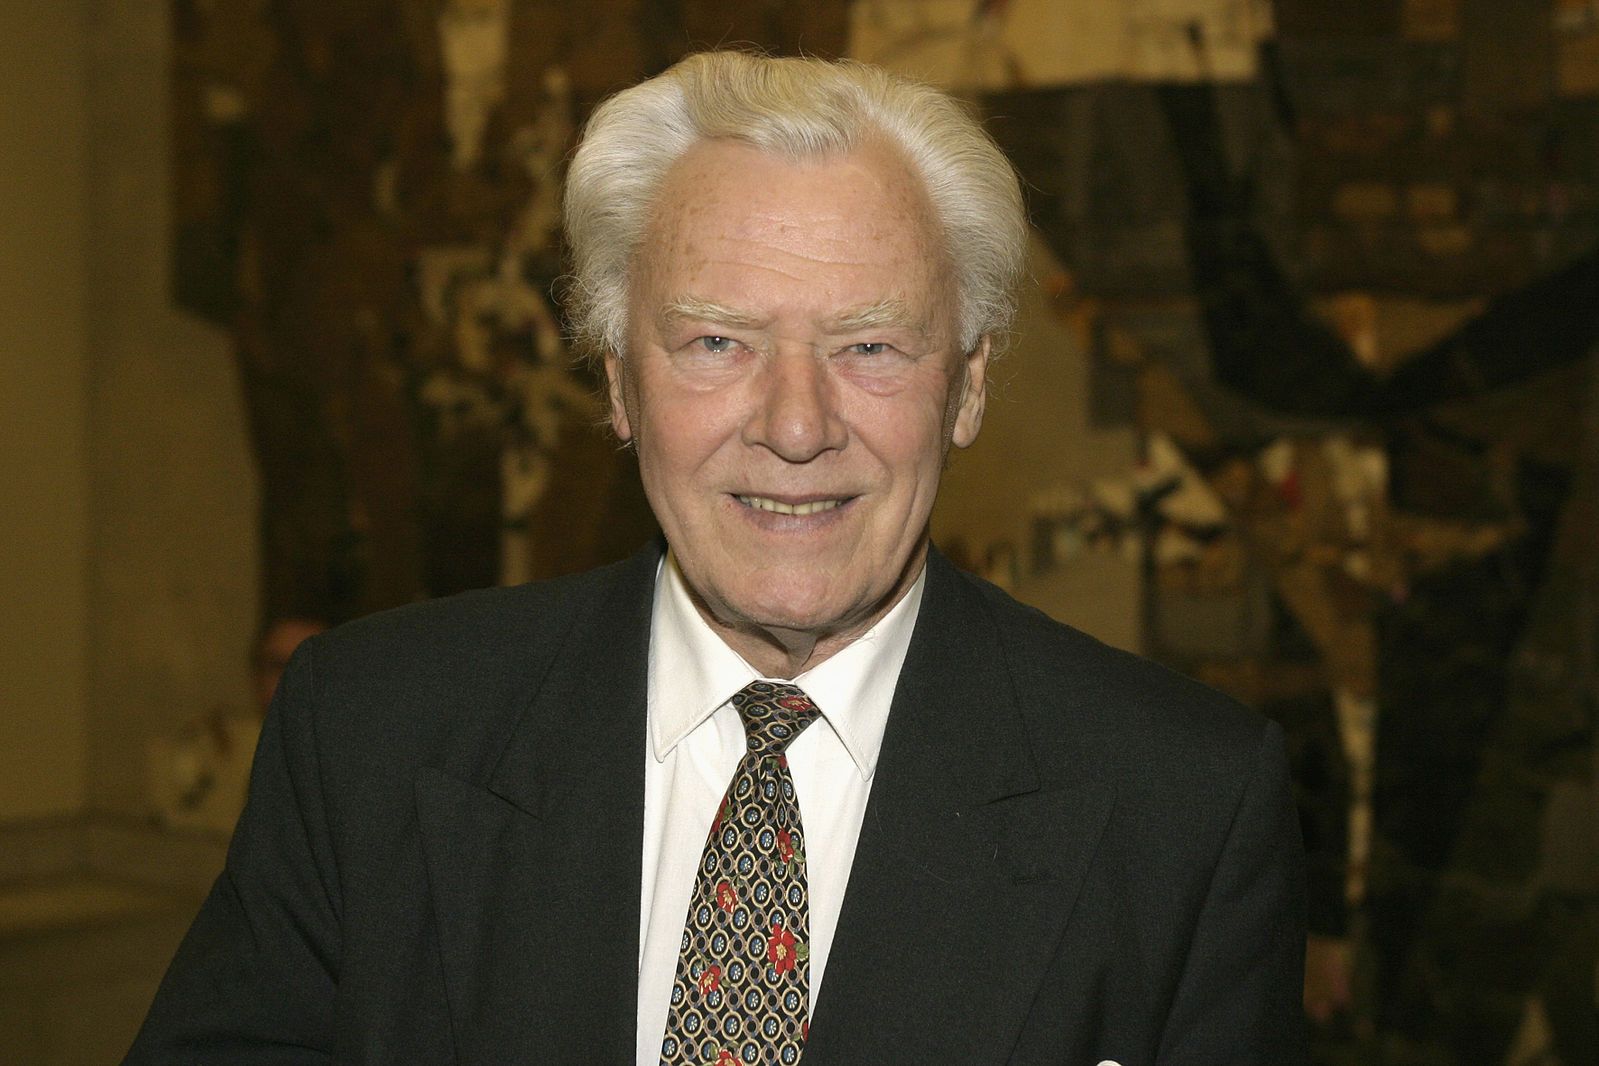 Former Prime Minister Poul Schlüter has died